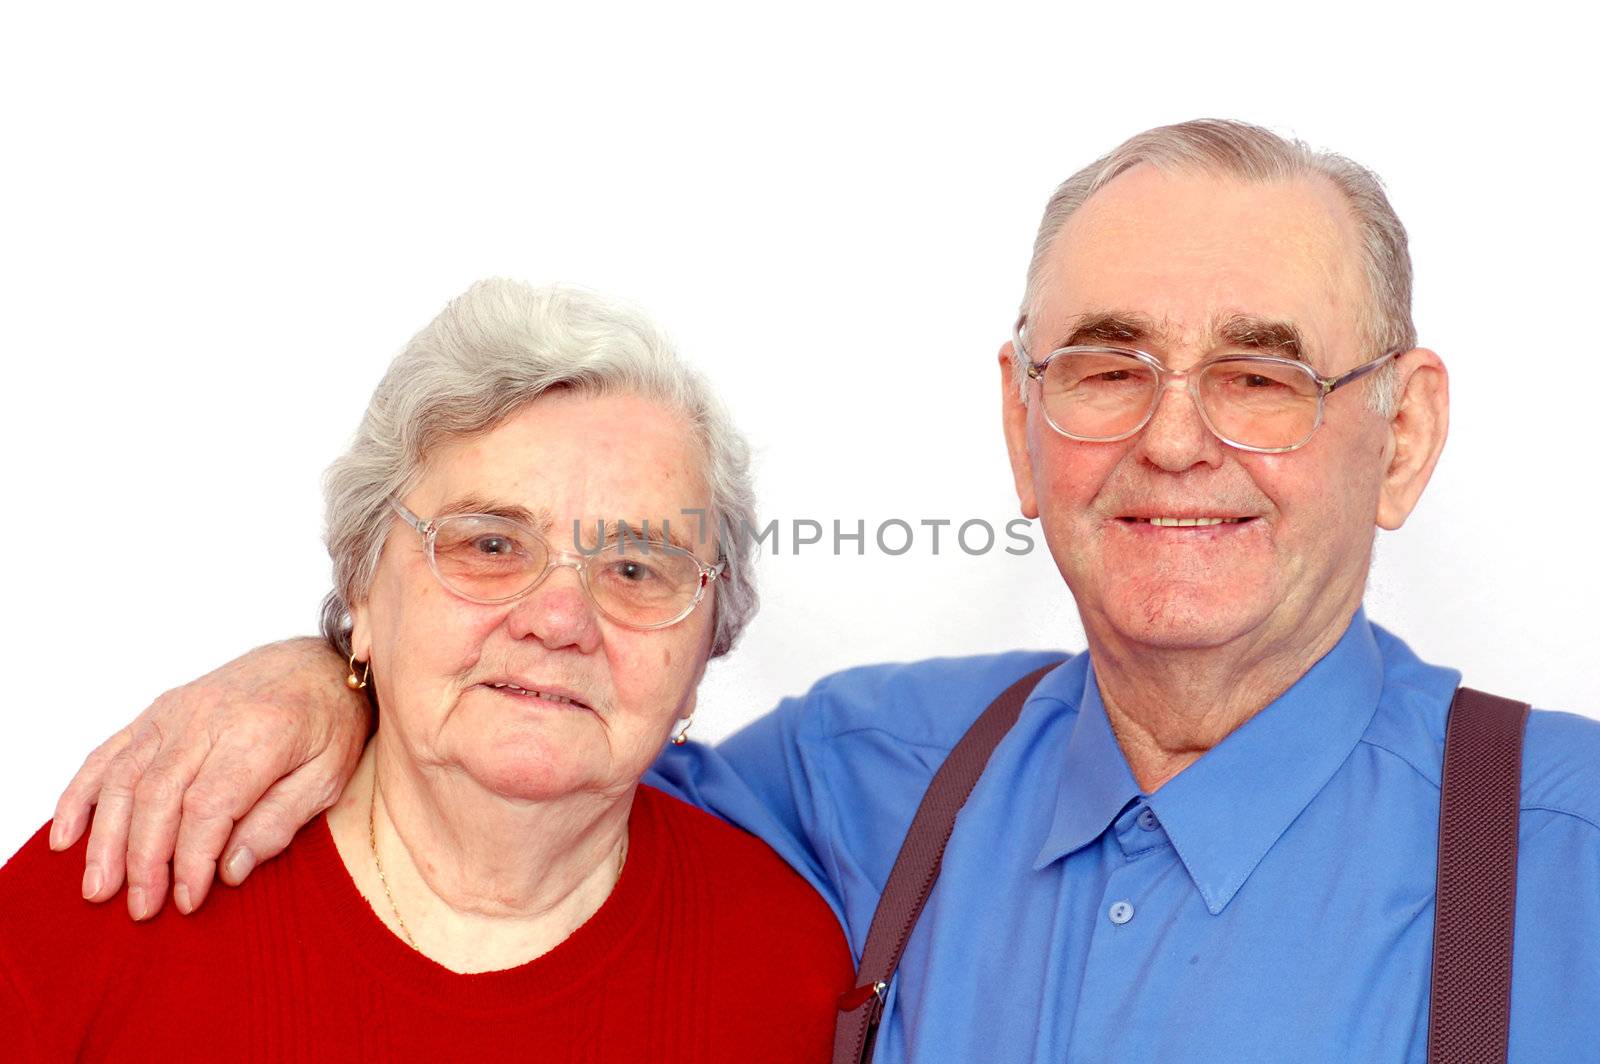 Elderly happy couple isolated on white background